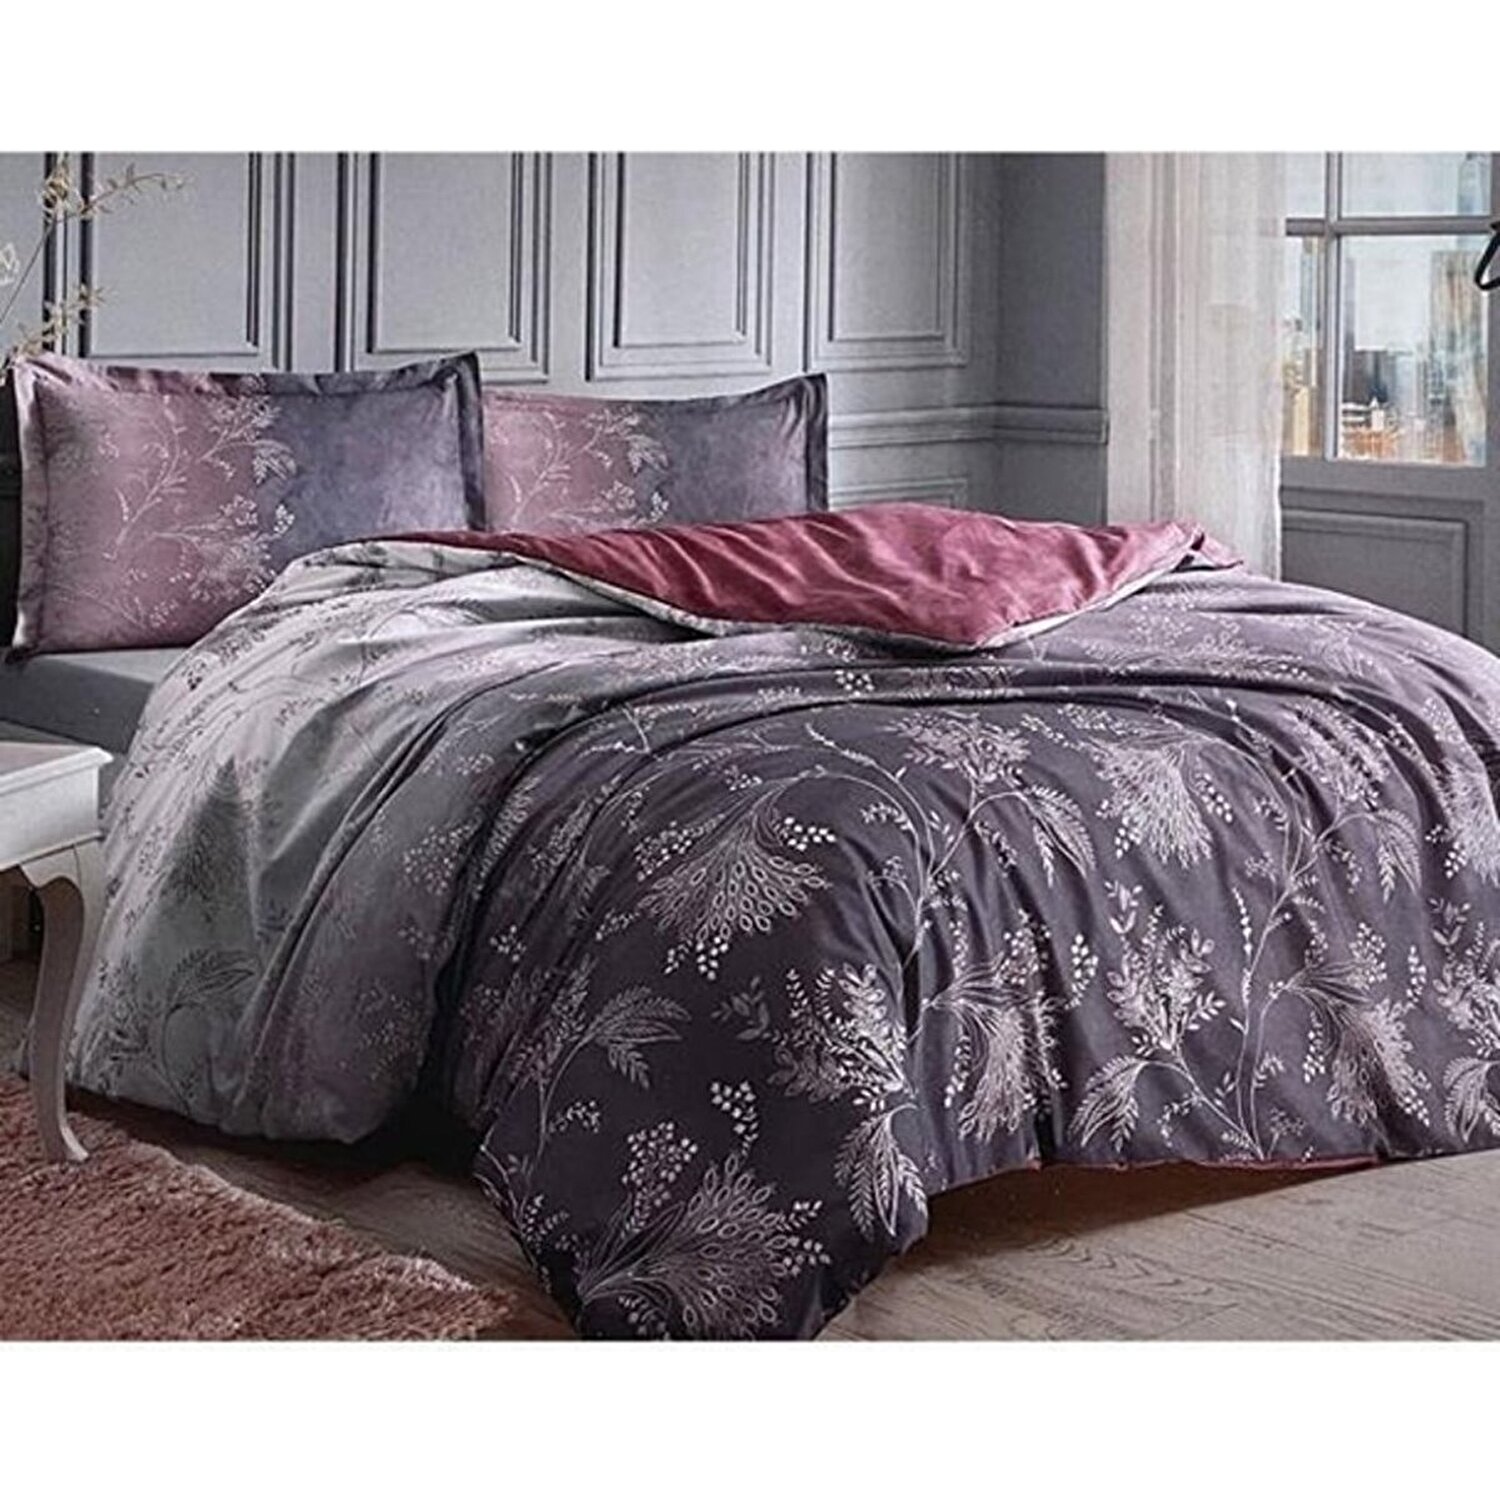 Özdilek Фиолетовый Комплект постельного белья Ditsy Ranforce özdilek trioline комплект постельного белья фиолетовый